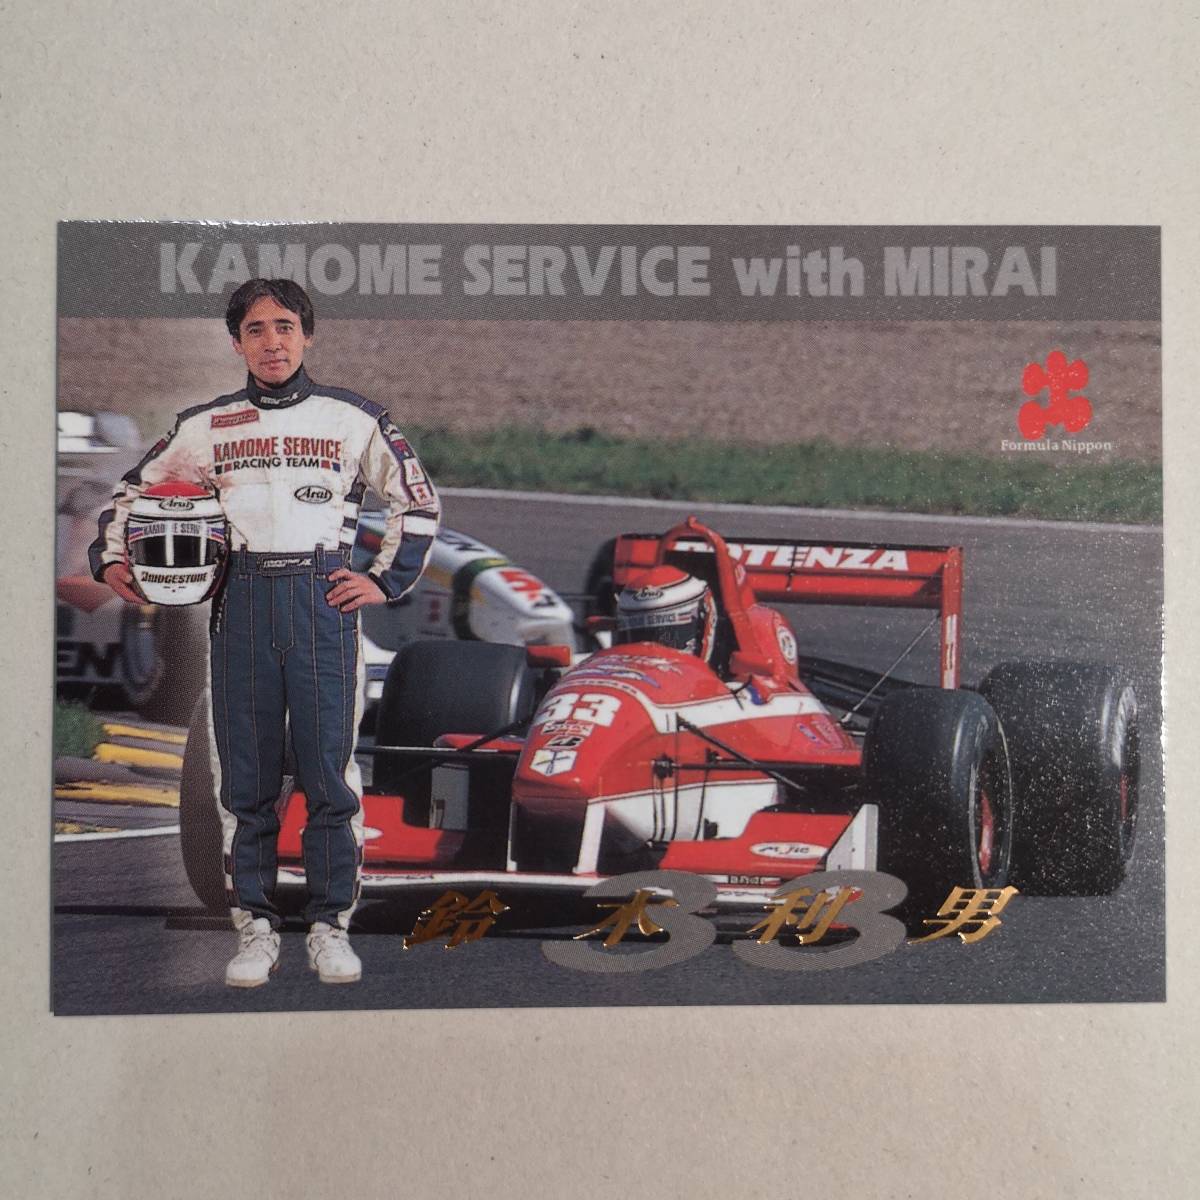 ◆97 Formula Nippon コレクションカード「KAMOME SERVICE with MIRAI 鈴木利男」S-18◆エポック社 1997年/フォーミュラニッポン/CA車_画像1